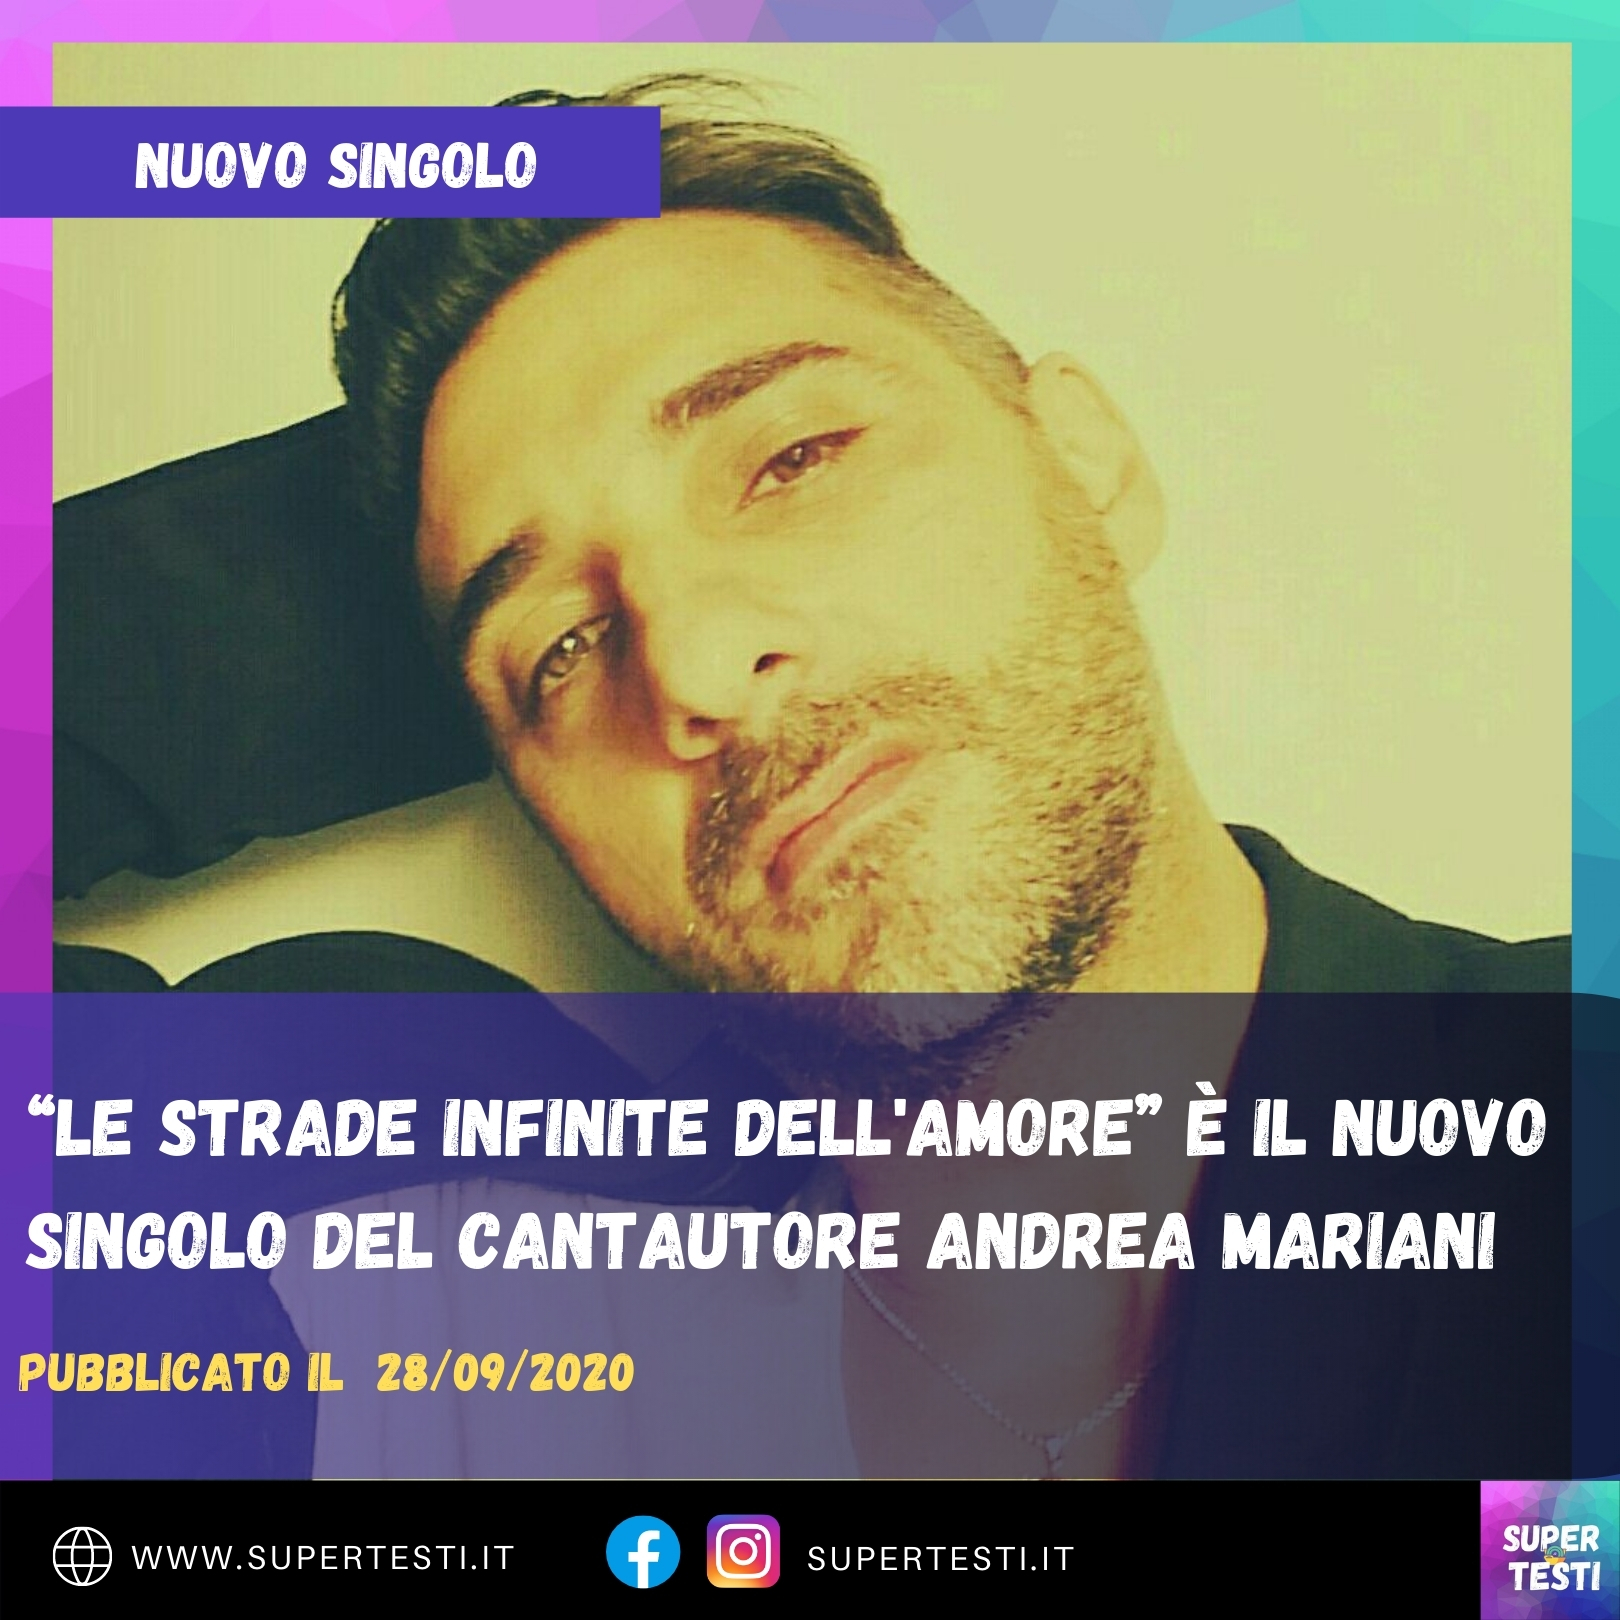 "Le strade infinite dell'amore" è il nuovo singolo del cantautore Andrea Mariani